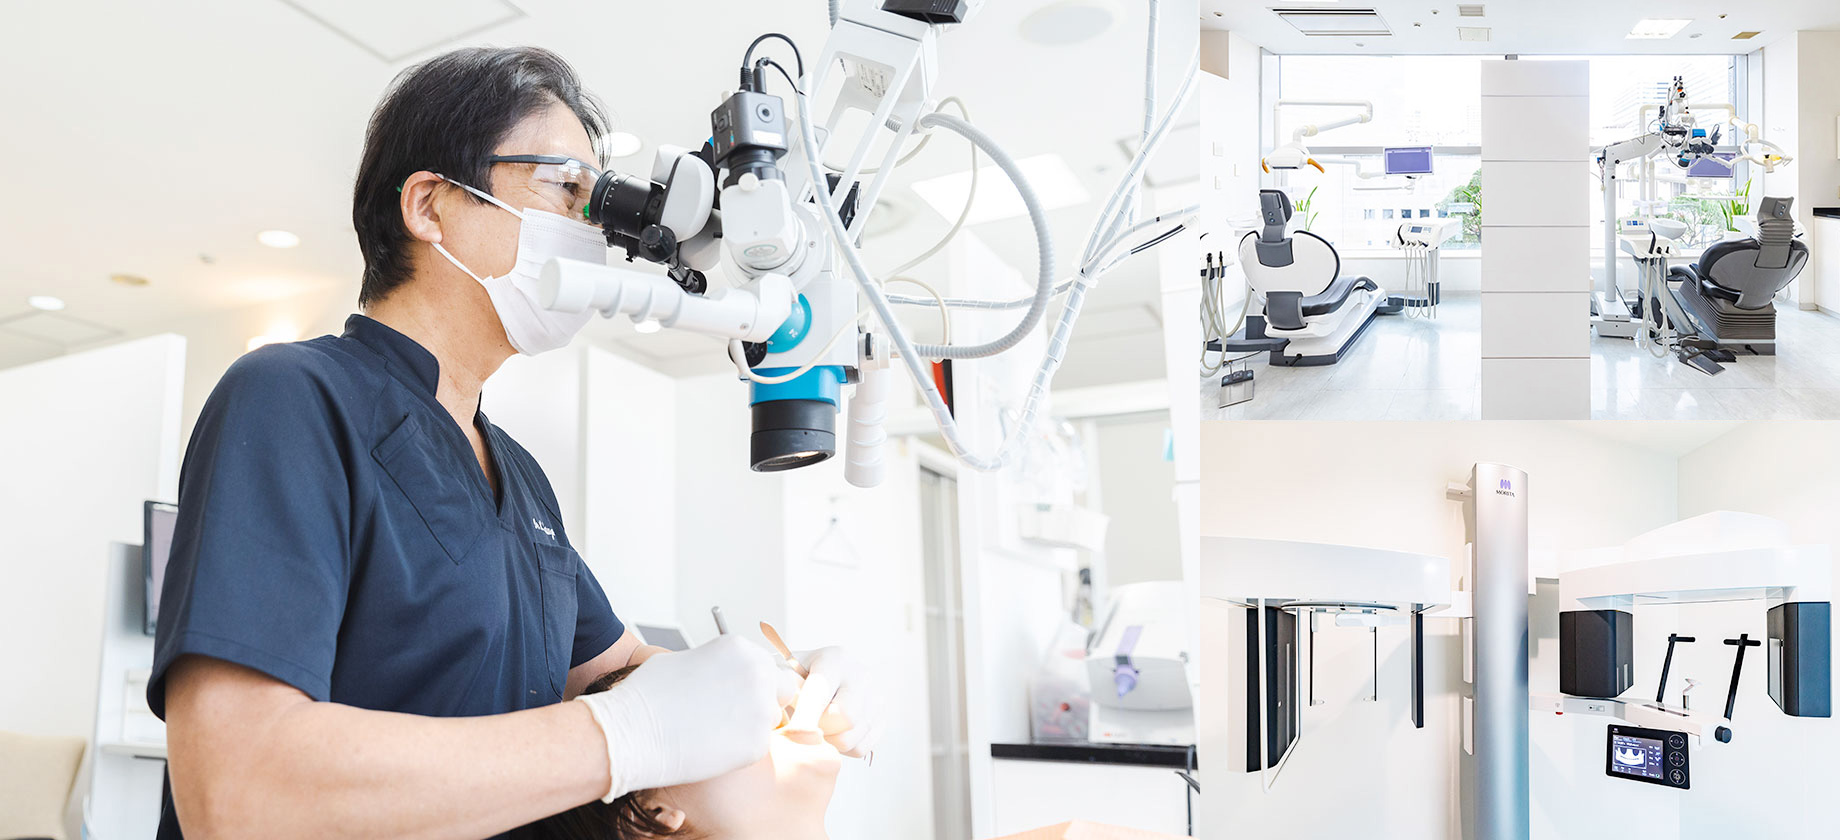 先端的な設備を整え、多様な経験をもつ歯科医師が、一人ひとりに適した治療をご提供します。
	